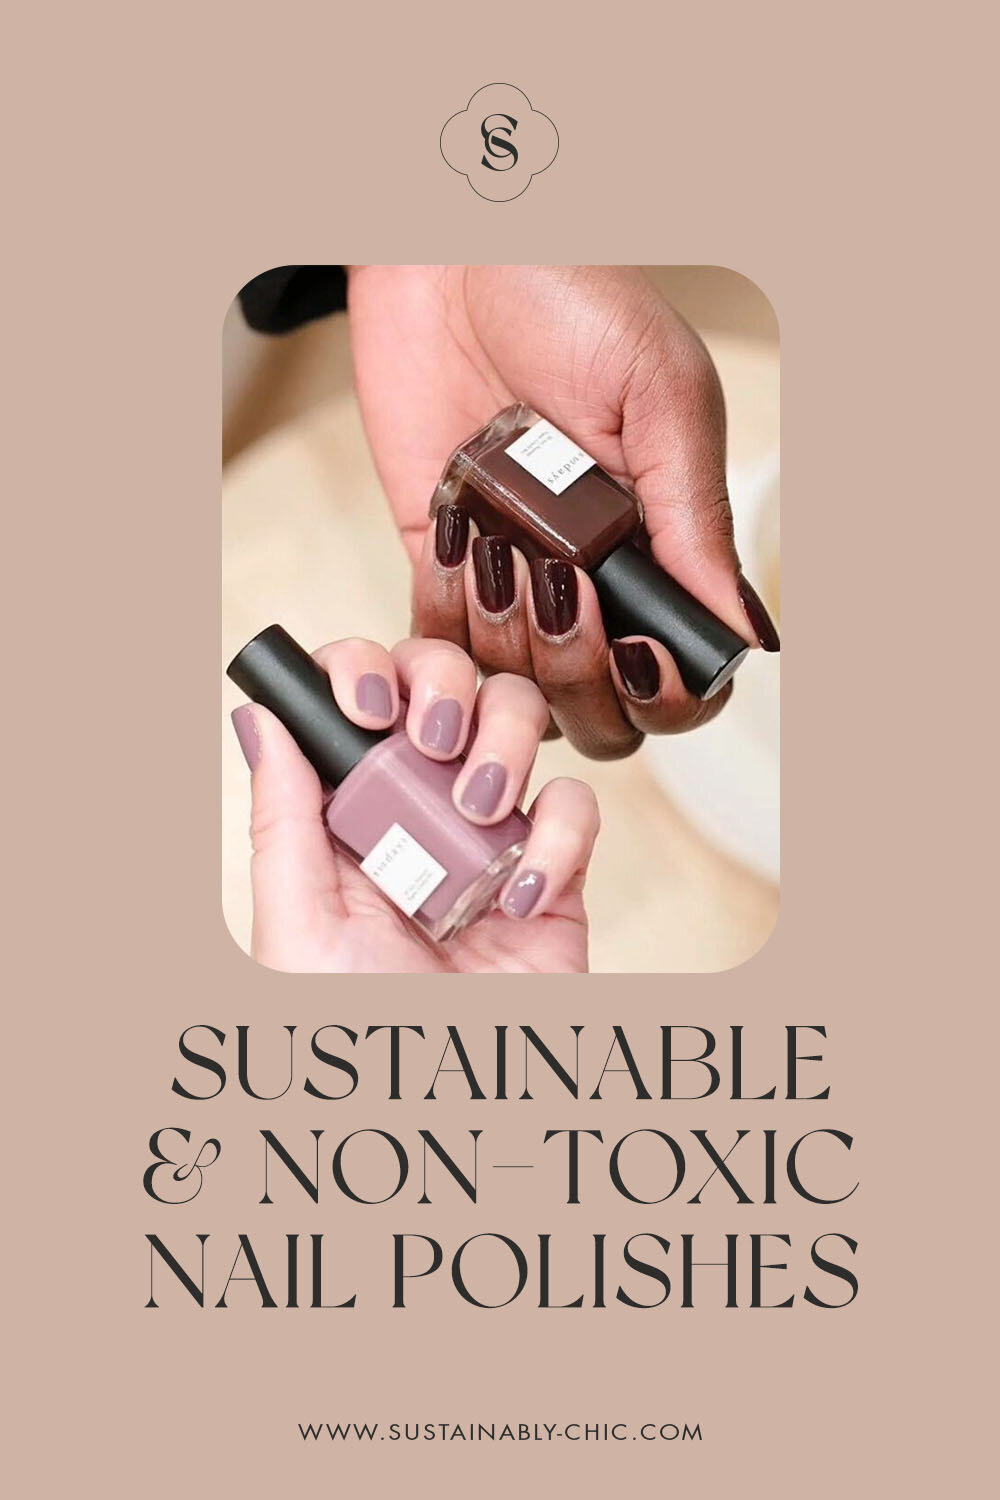 可持续时尚|可持续时装和美容提单bob网appog | The Best Sustainable & Non-Toxic Nail Polishes.jpg